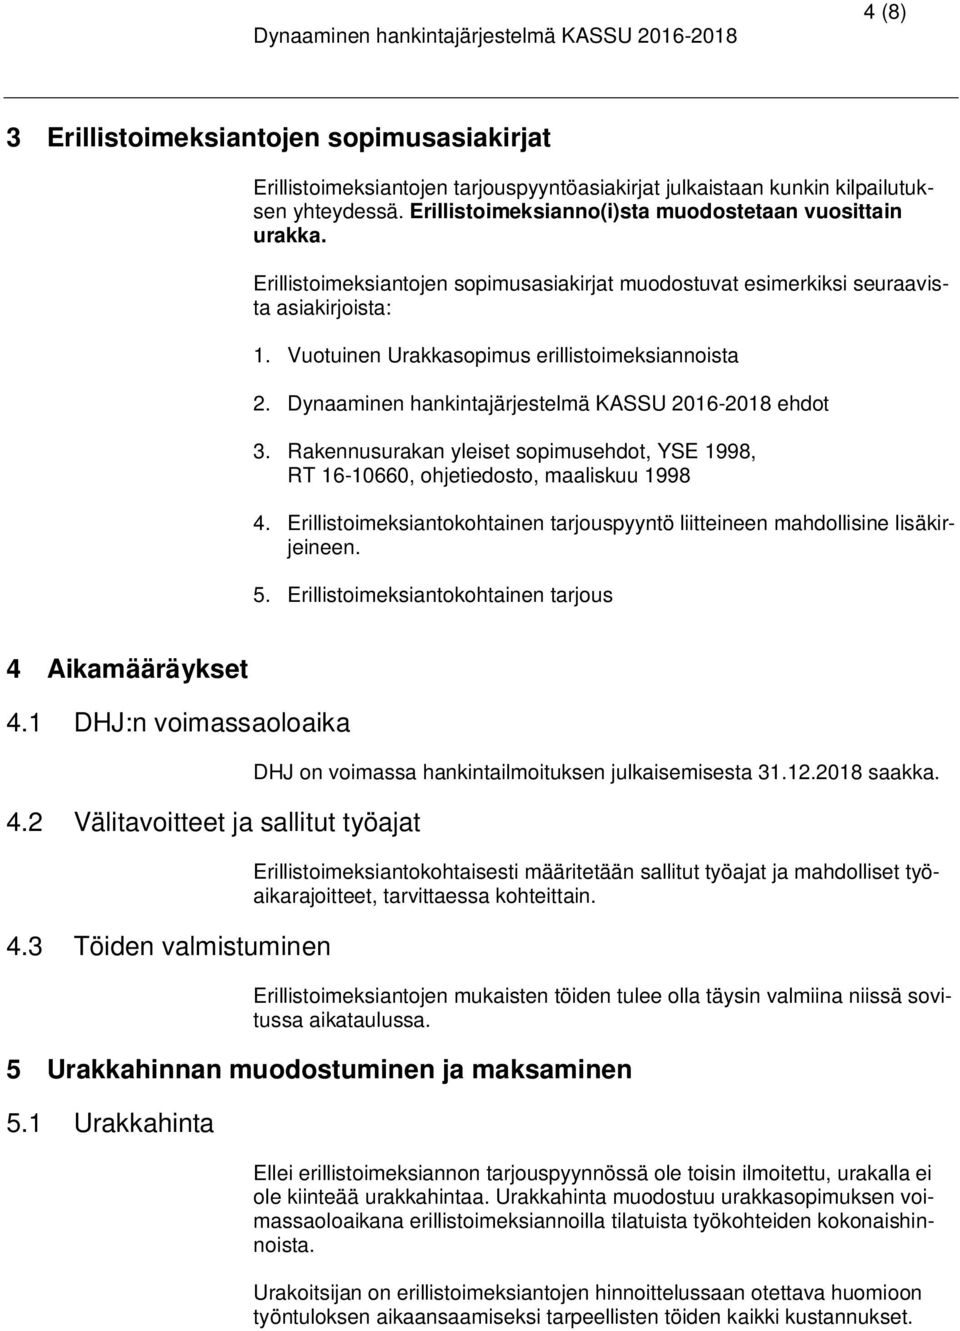 Dynaaminen hankintajärjestelmä KASSU 2016-2018 ehdot 3. Rakennusurakan yleiset sopimusehdot, YSE 1998, RT 16-10660, ohjetiedosto, maaliskuu 1998 4.